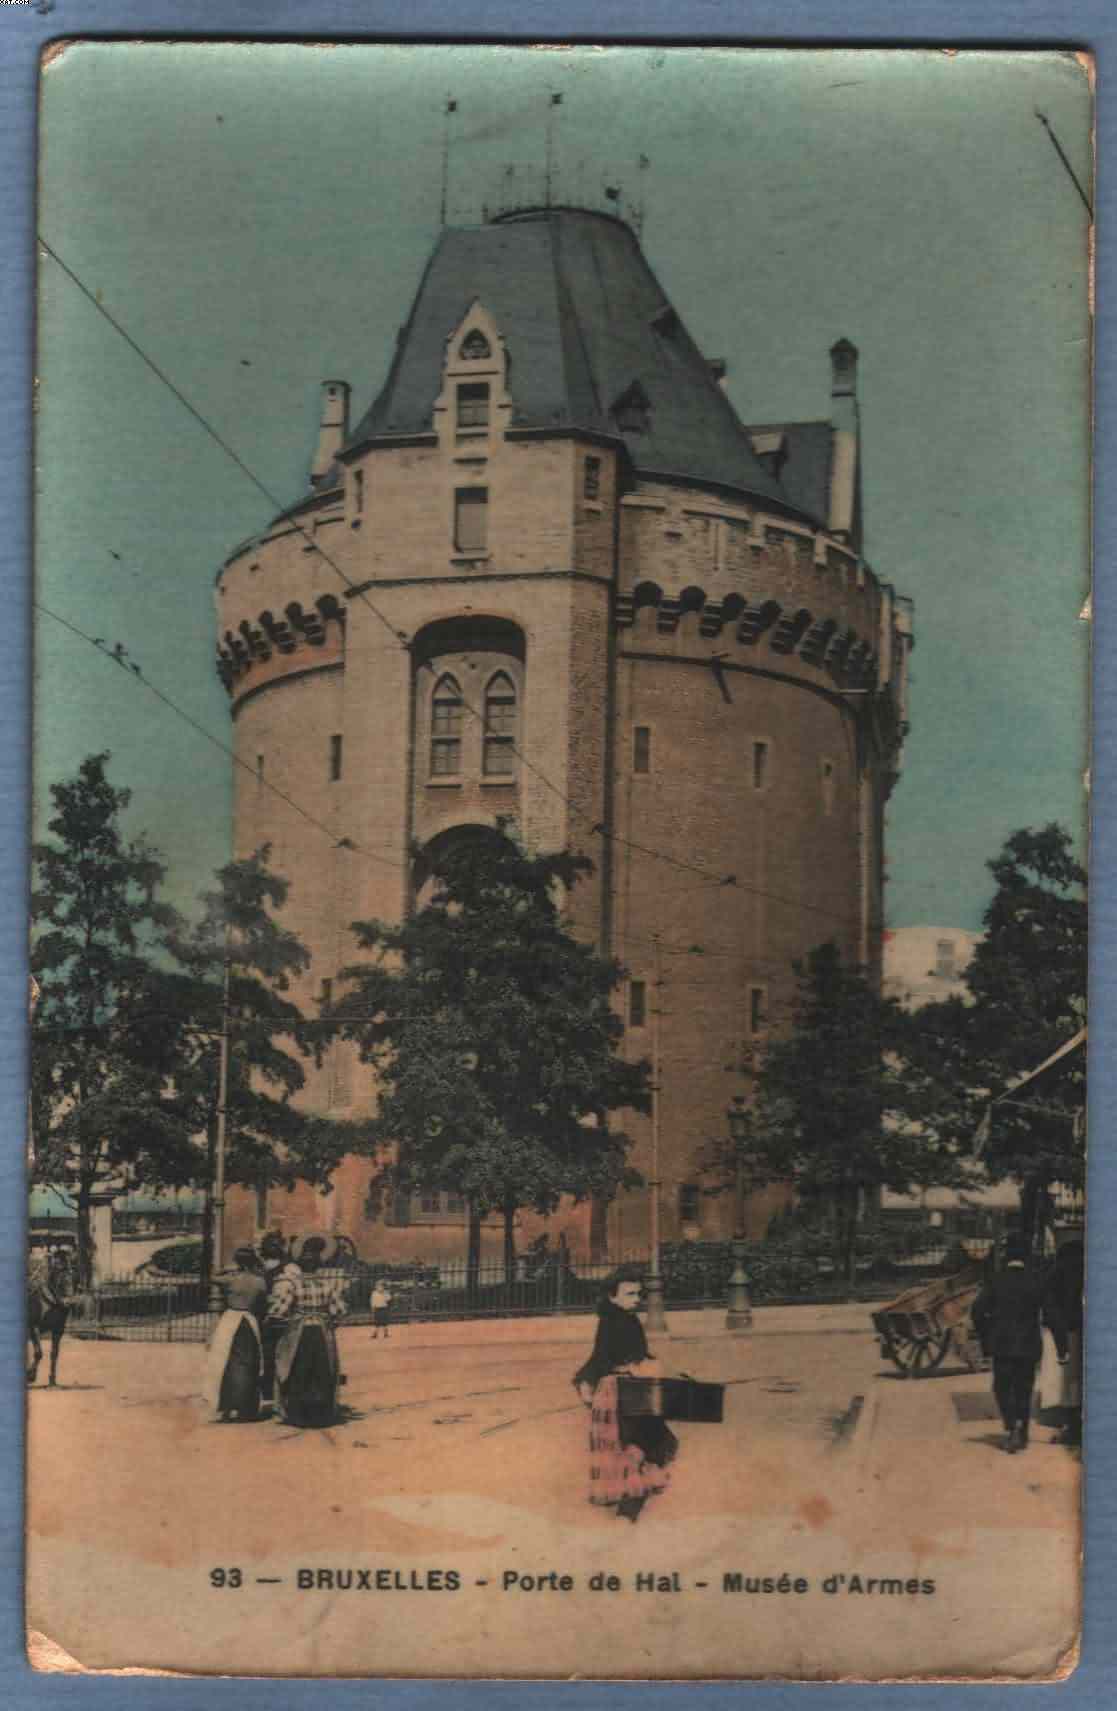 * BRUXELLES - BRUSSEL * (Edition Grand Bazar Anspach Nr. 93) Porte De Hal, Musée D'armes, De Halletoren, Wapenmuseum - Musea